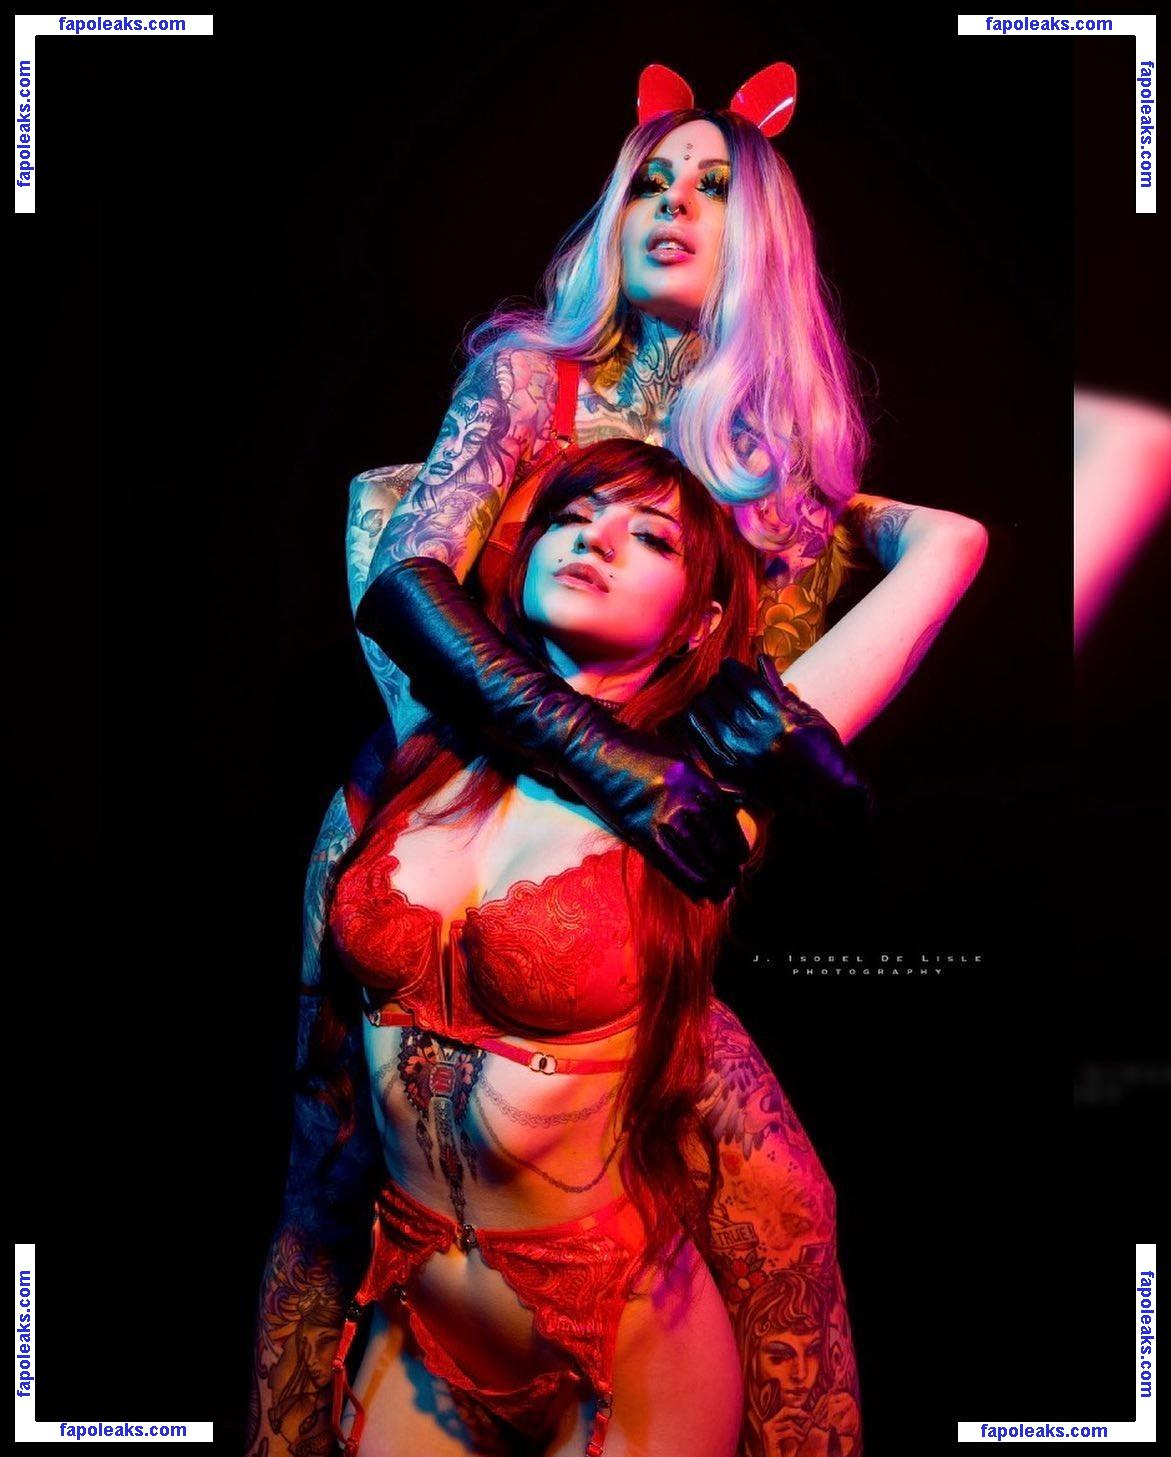 Hitoriookami / Vanessa Luciano / eroticmedusa nude photo #0013 from OnlyFans